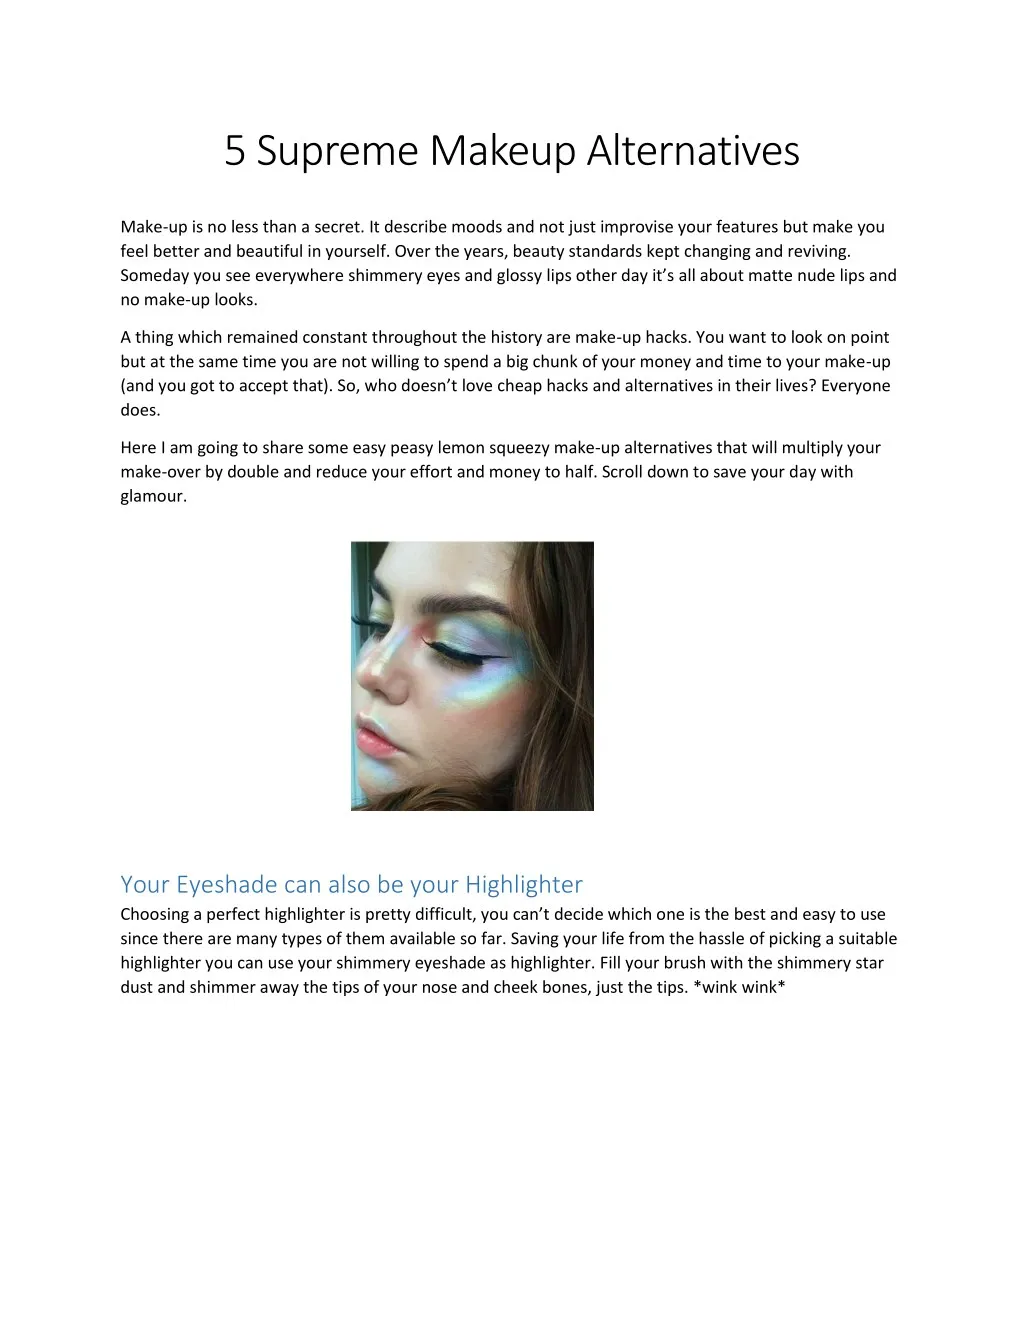 5 supreme makeup alternatives